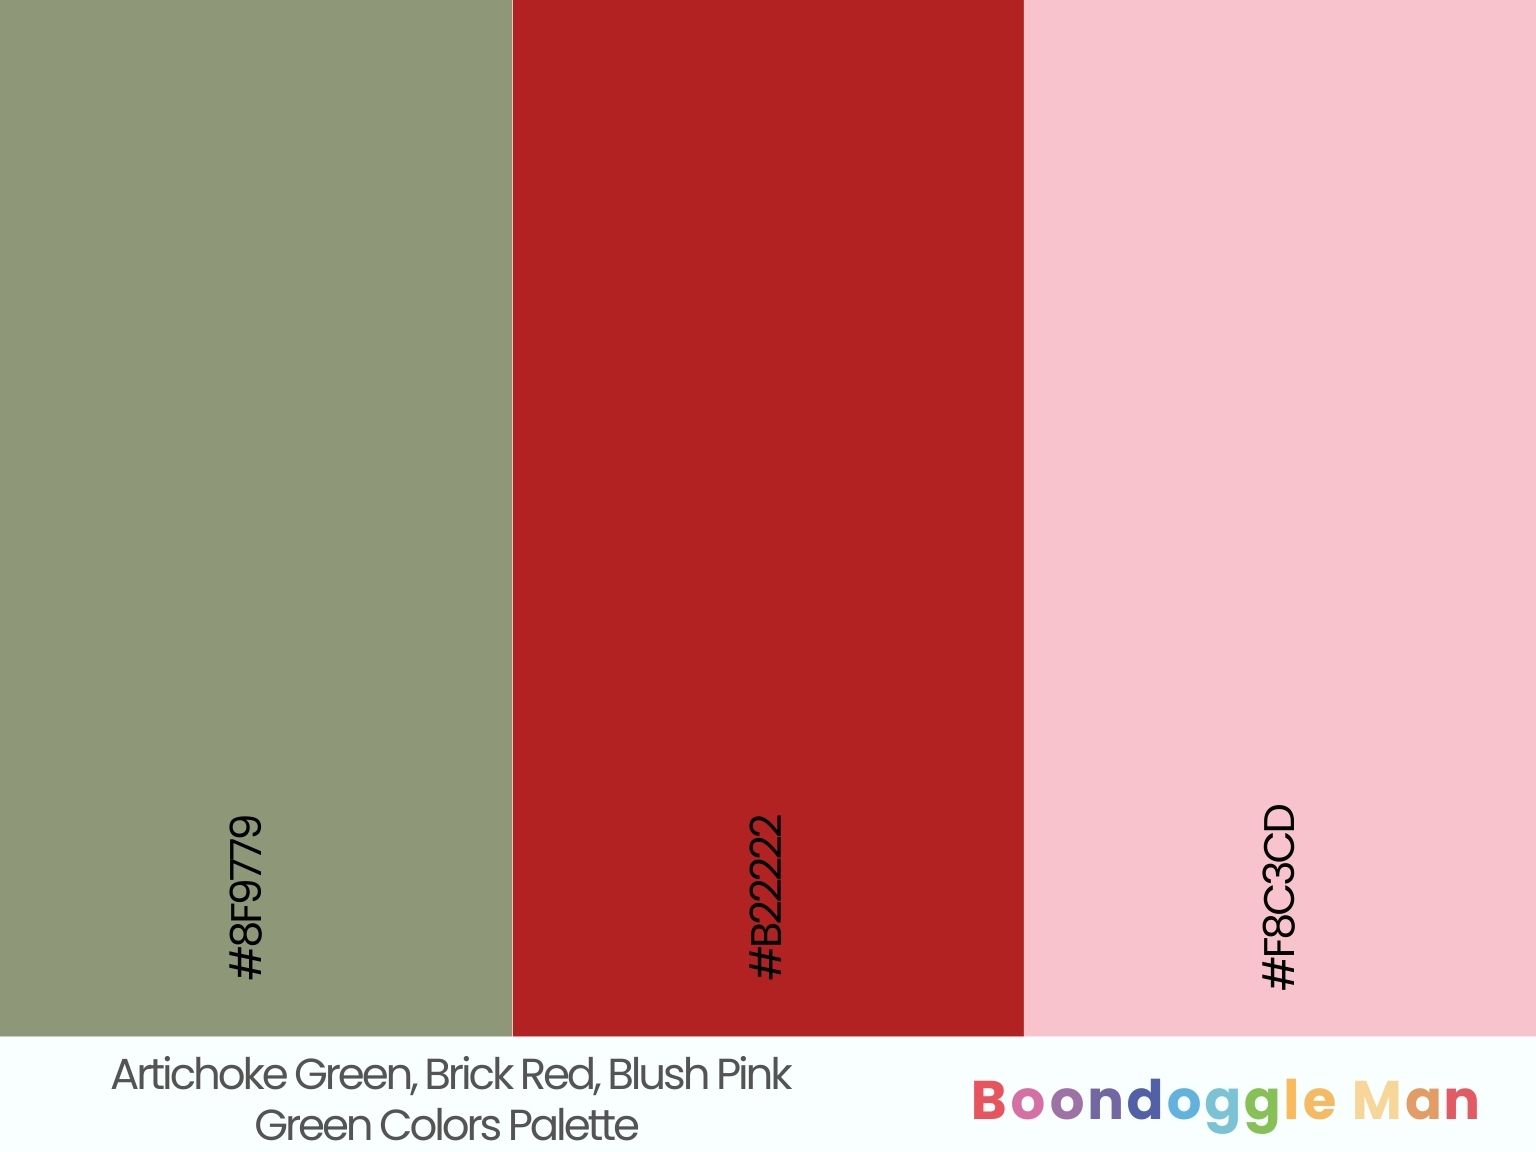 Artichoke Green, Brick Red, Blush Pink